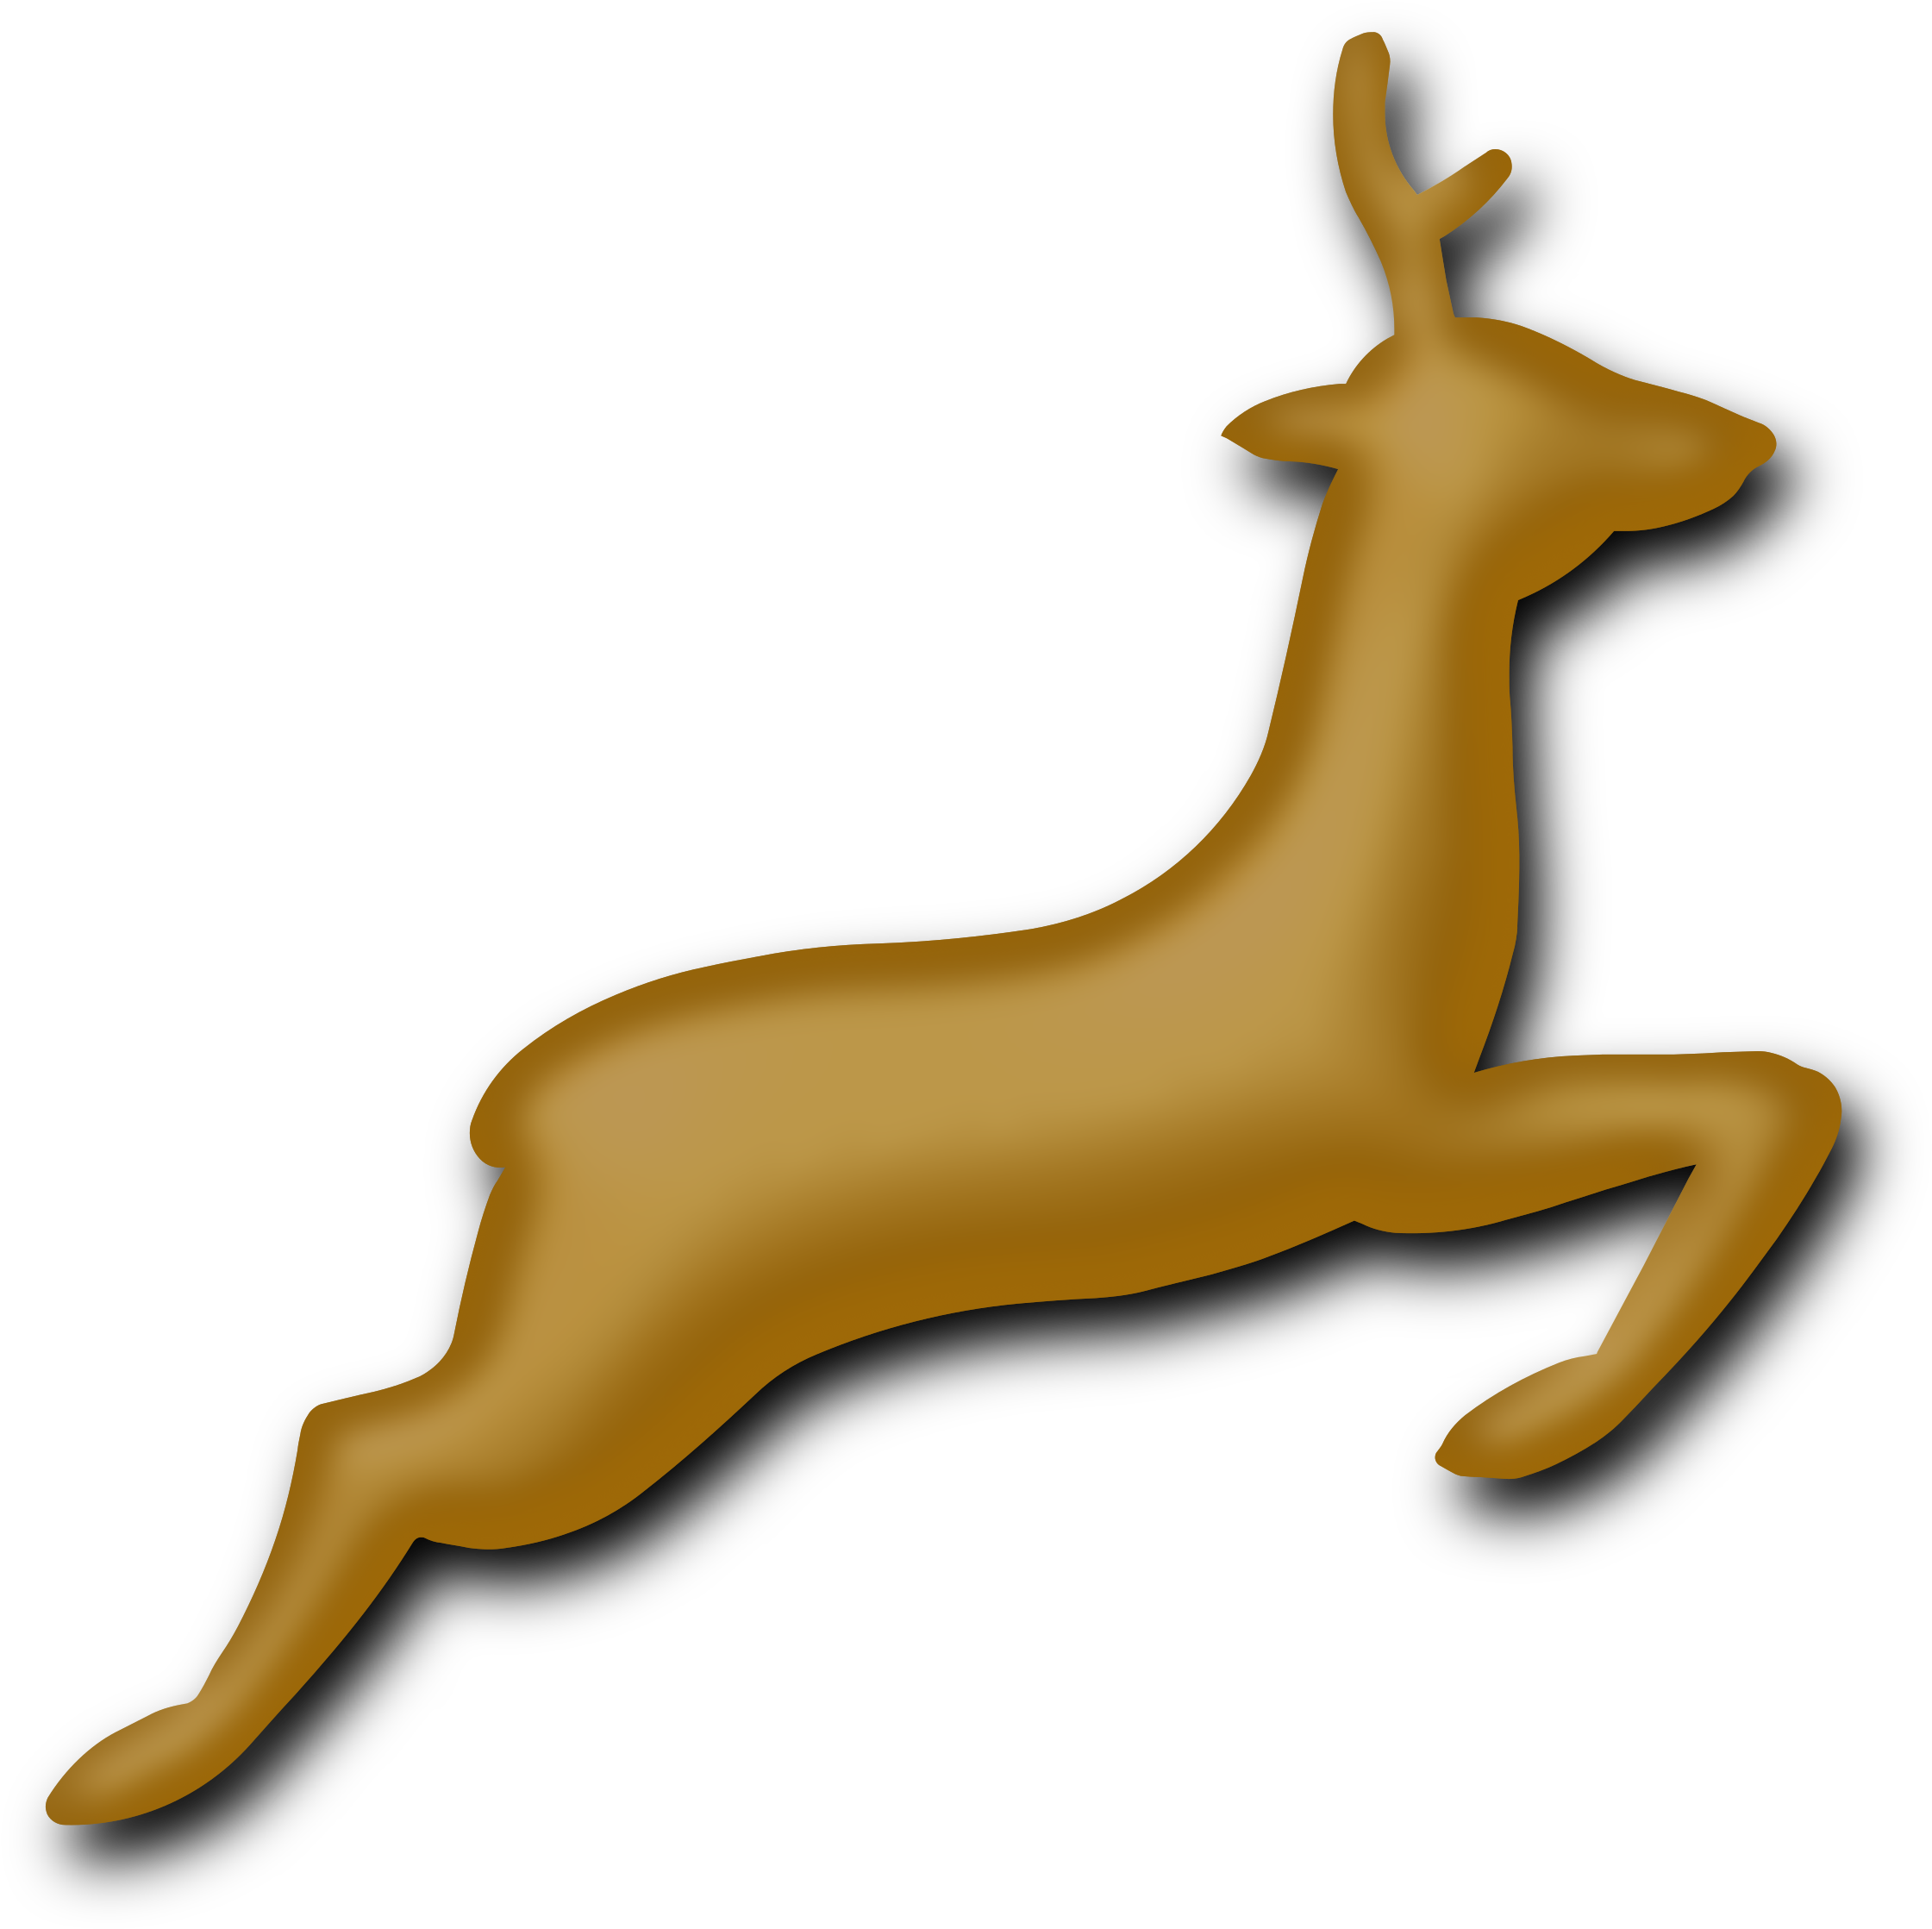 Big Image - Deer (2500x2495)